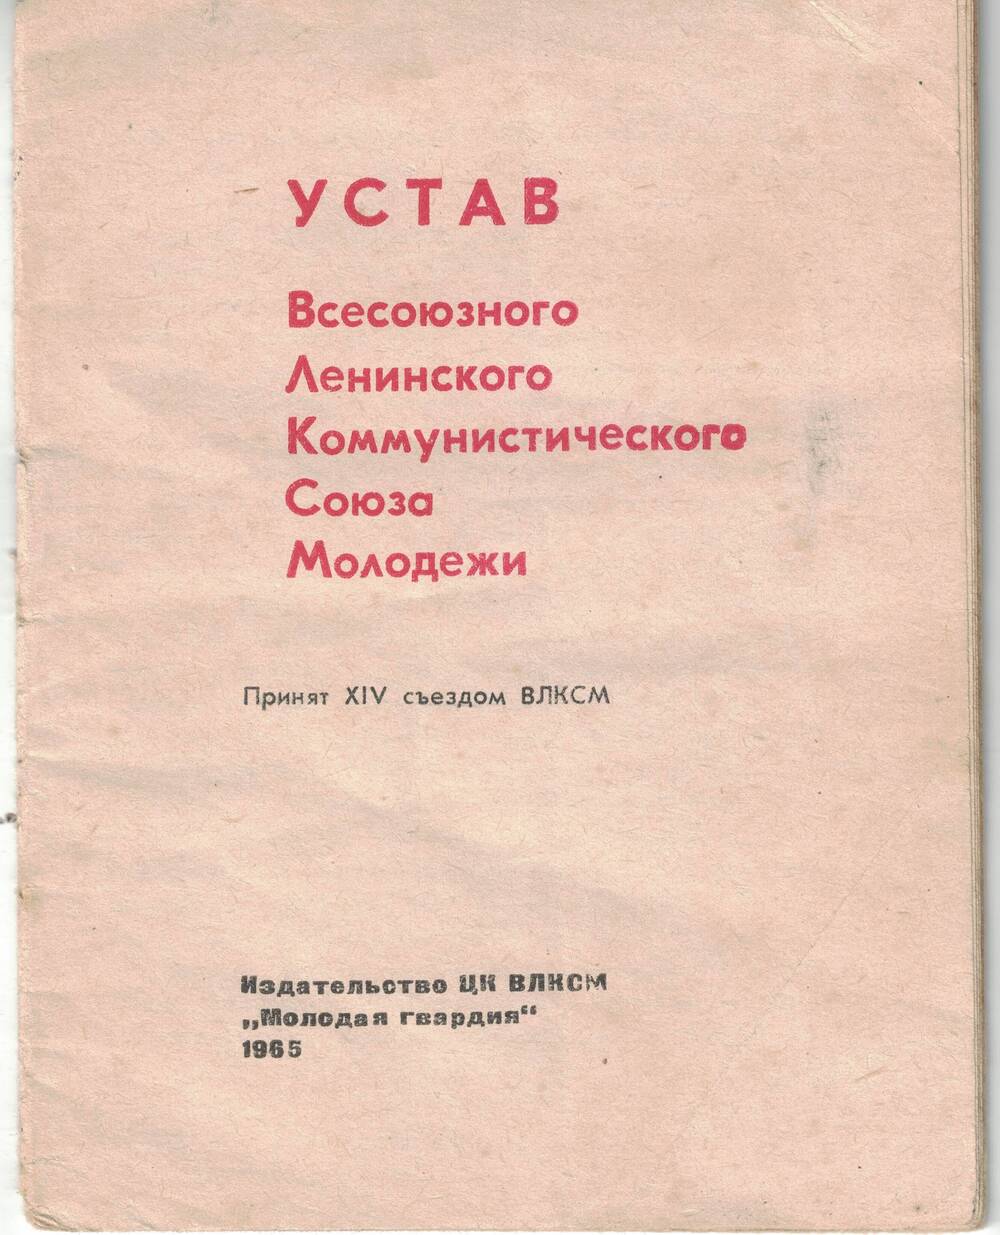 Устав ВЛКСМ. 1965 г.